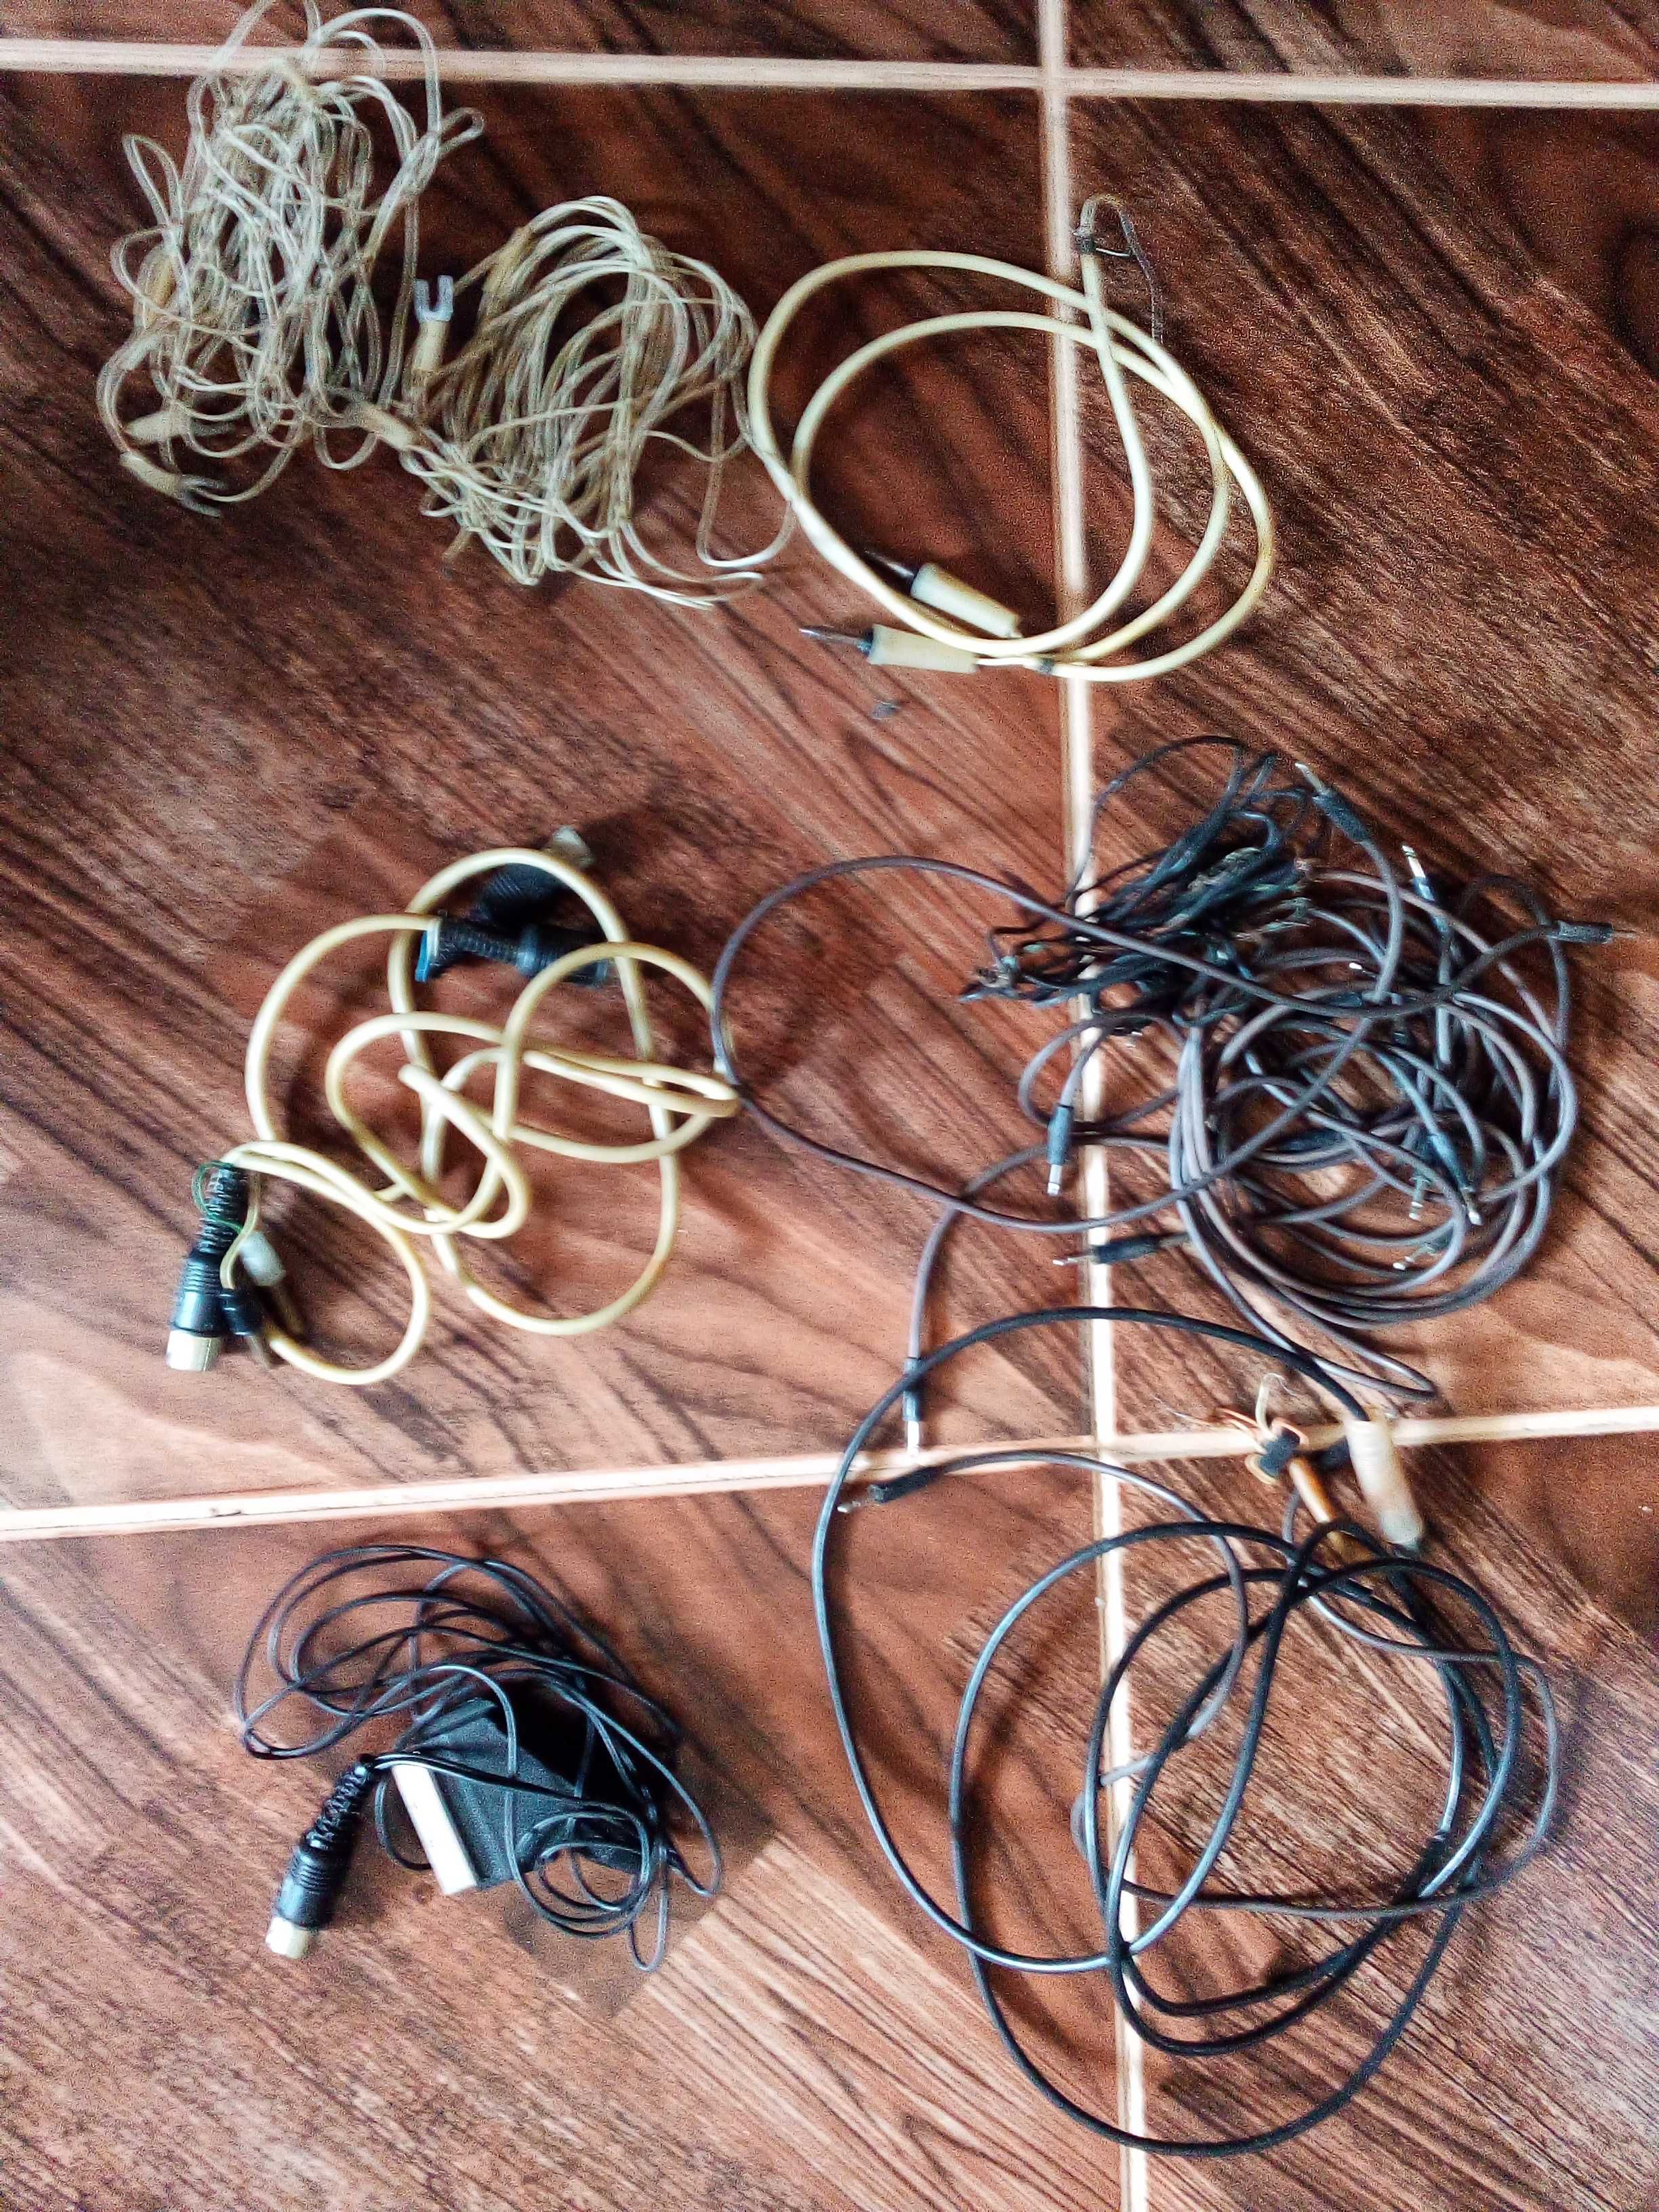 Куча разных старинных кабелей для техники(см фото)Цена за все